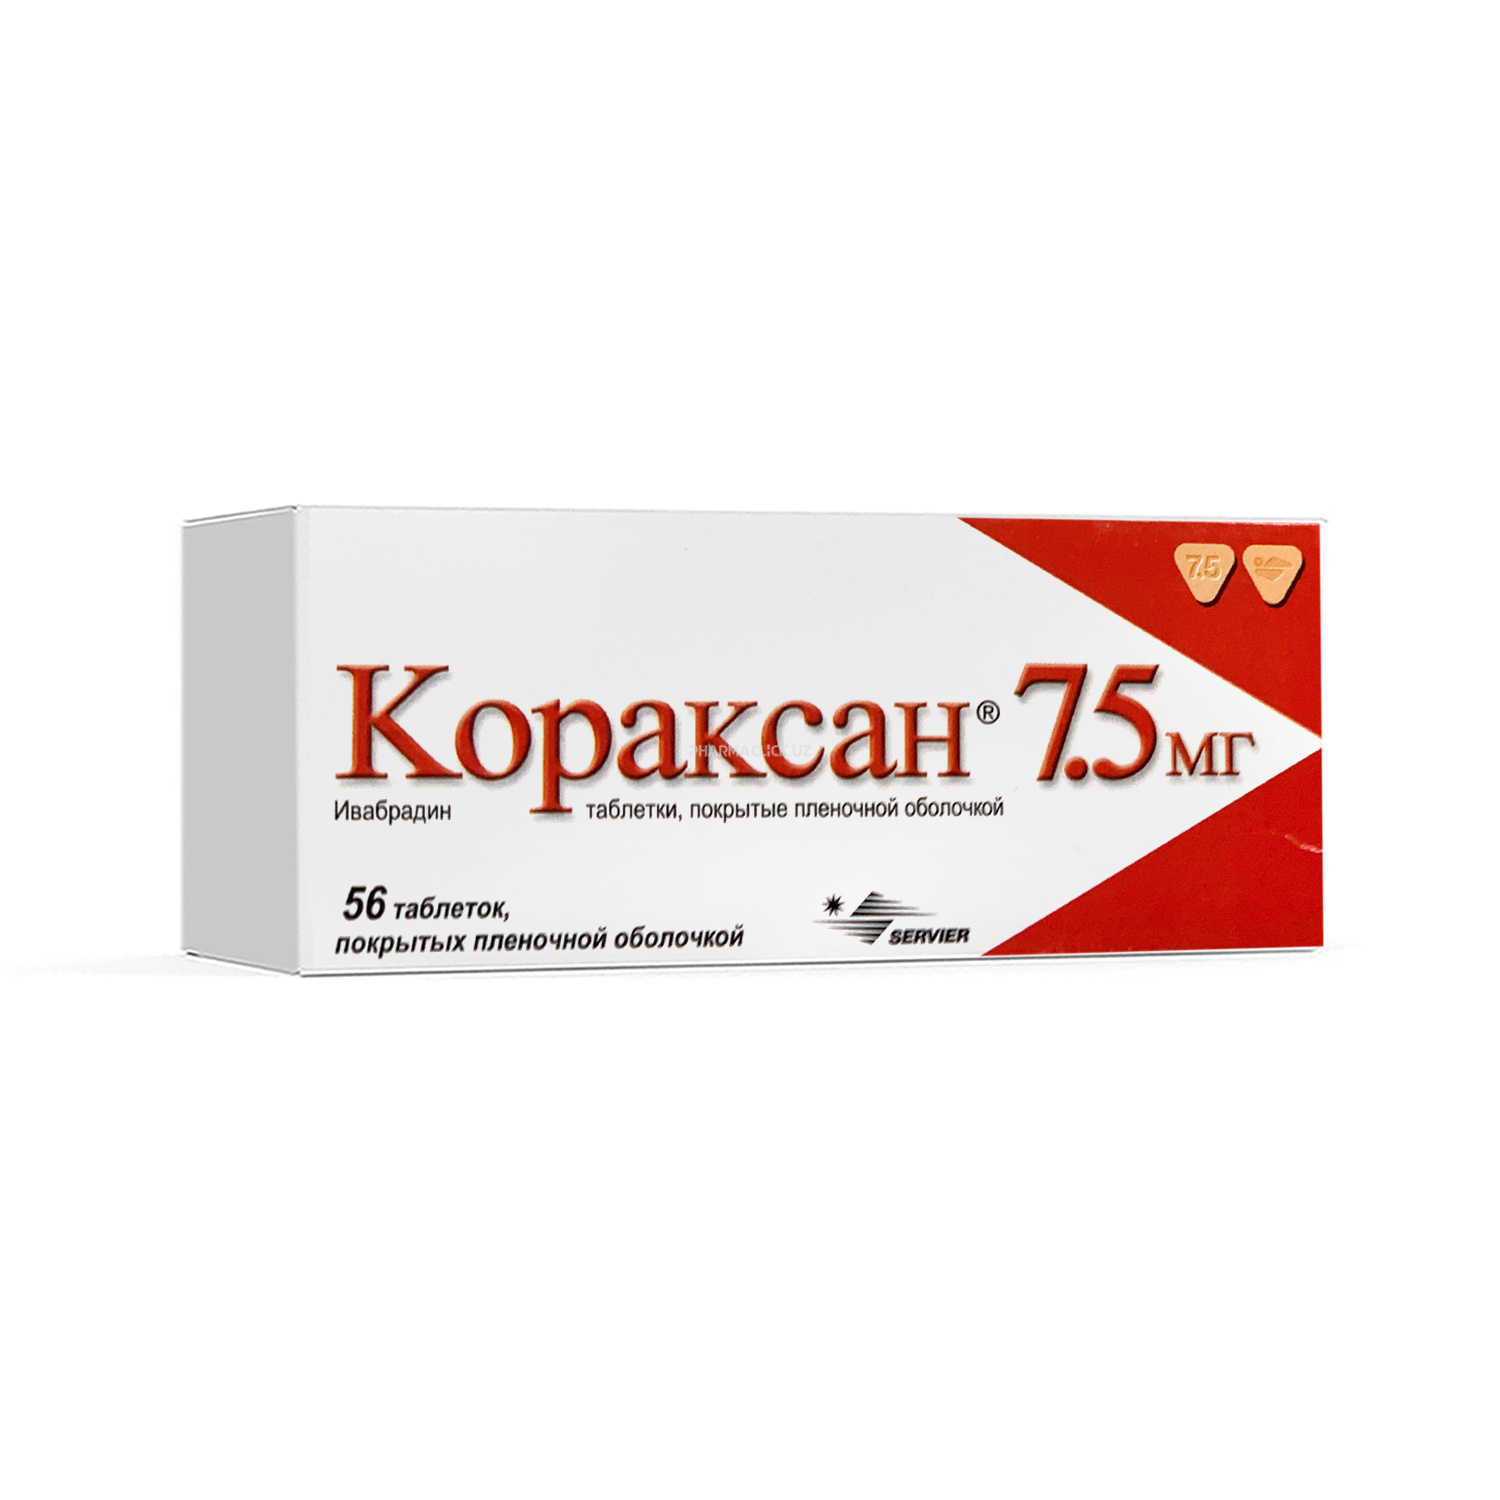 Koraksan plyonka qobiq bilan qoplangan tabletkalar 7,5 mg №56